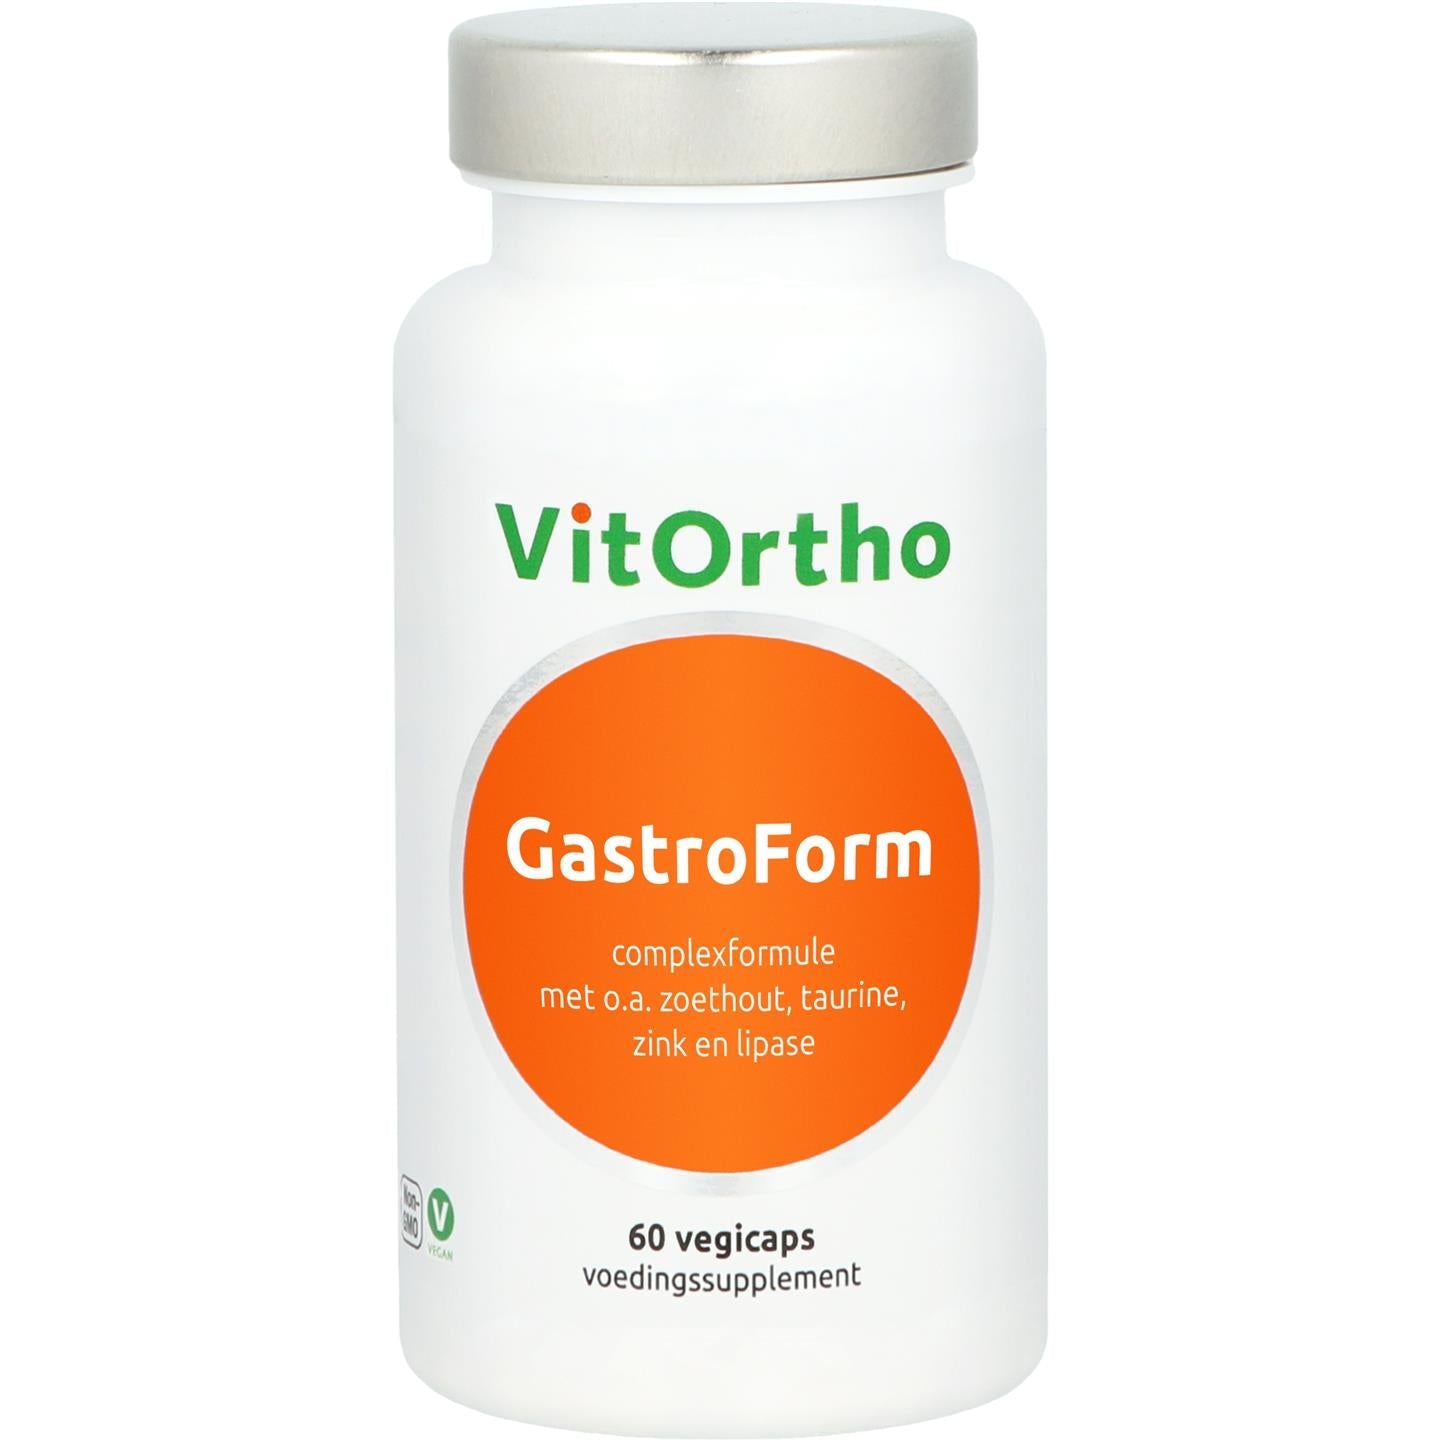 VitOrtho Gastroform 60 capsules - Vitortho